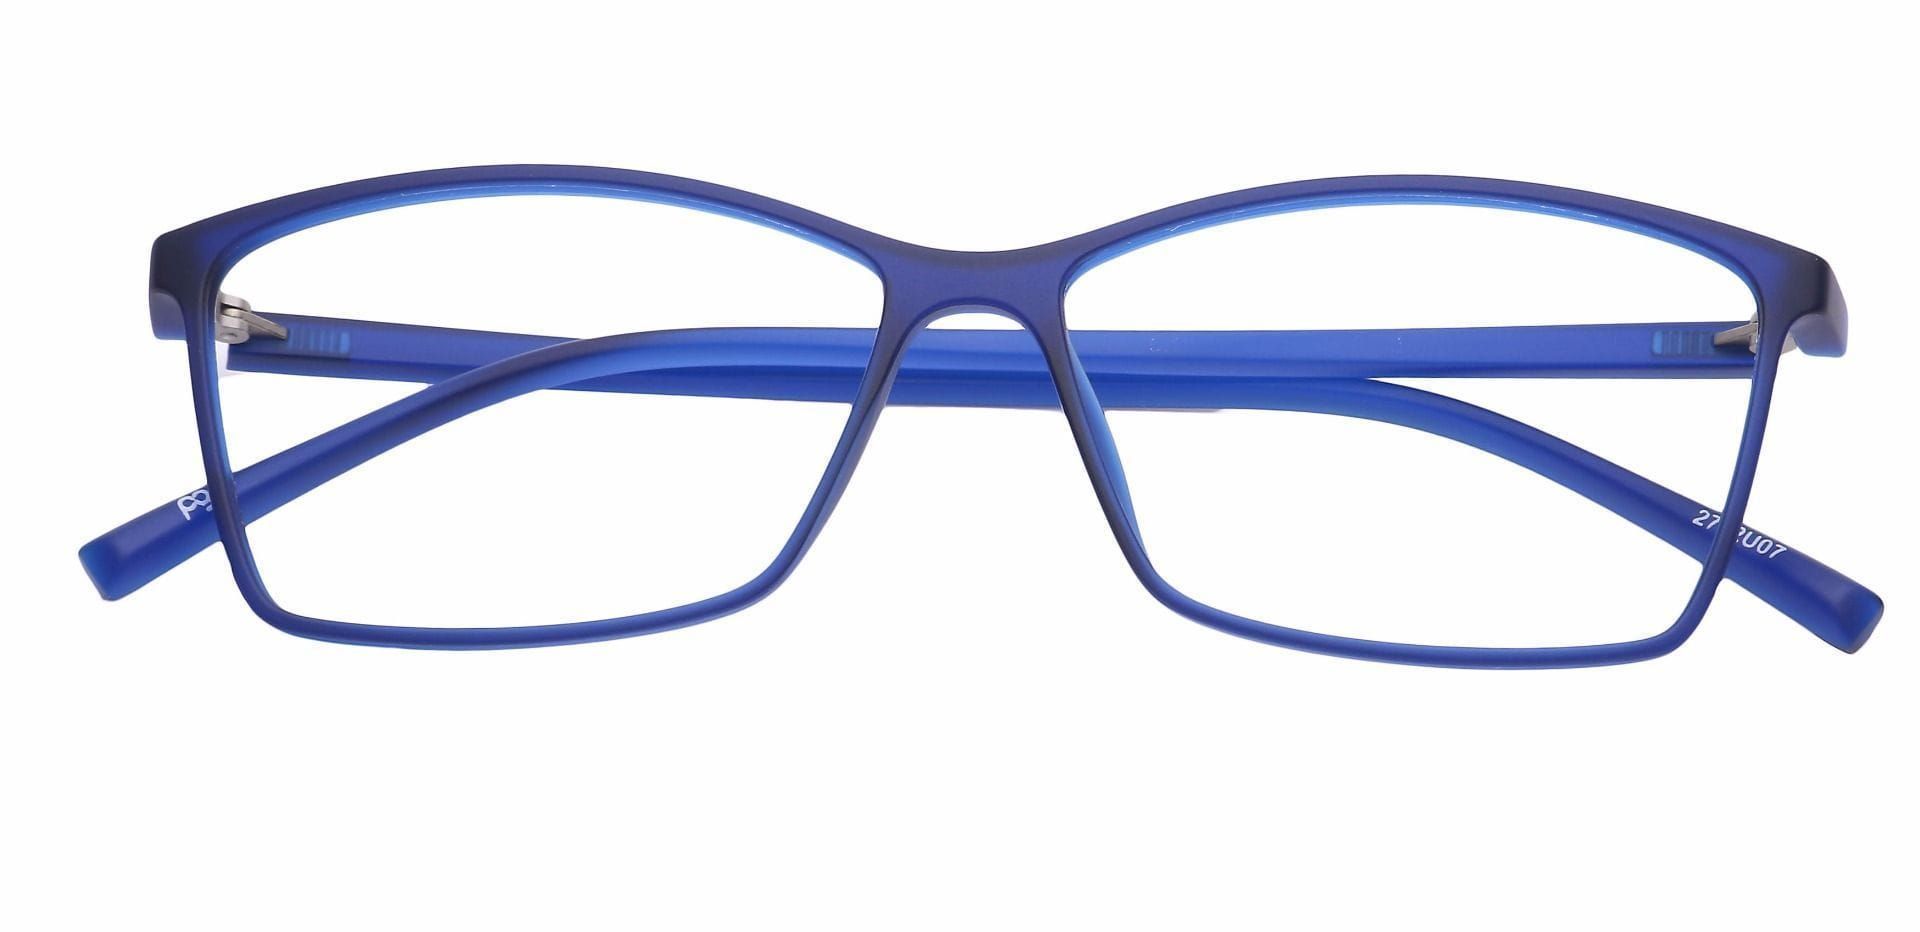 Align Rectangle Reading Glasses - Blue